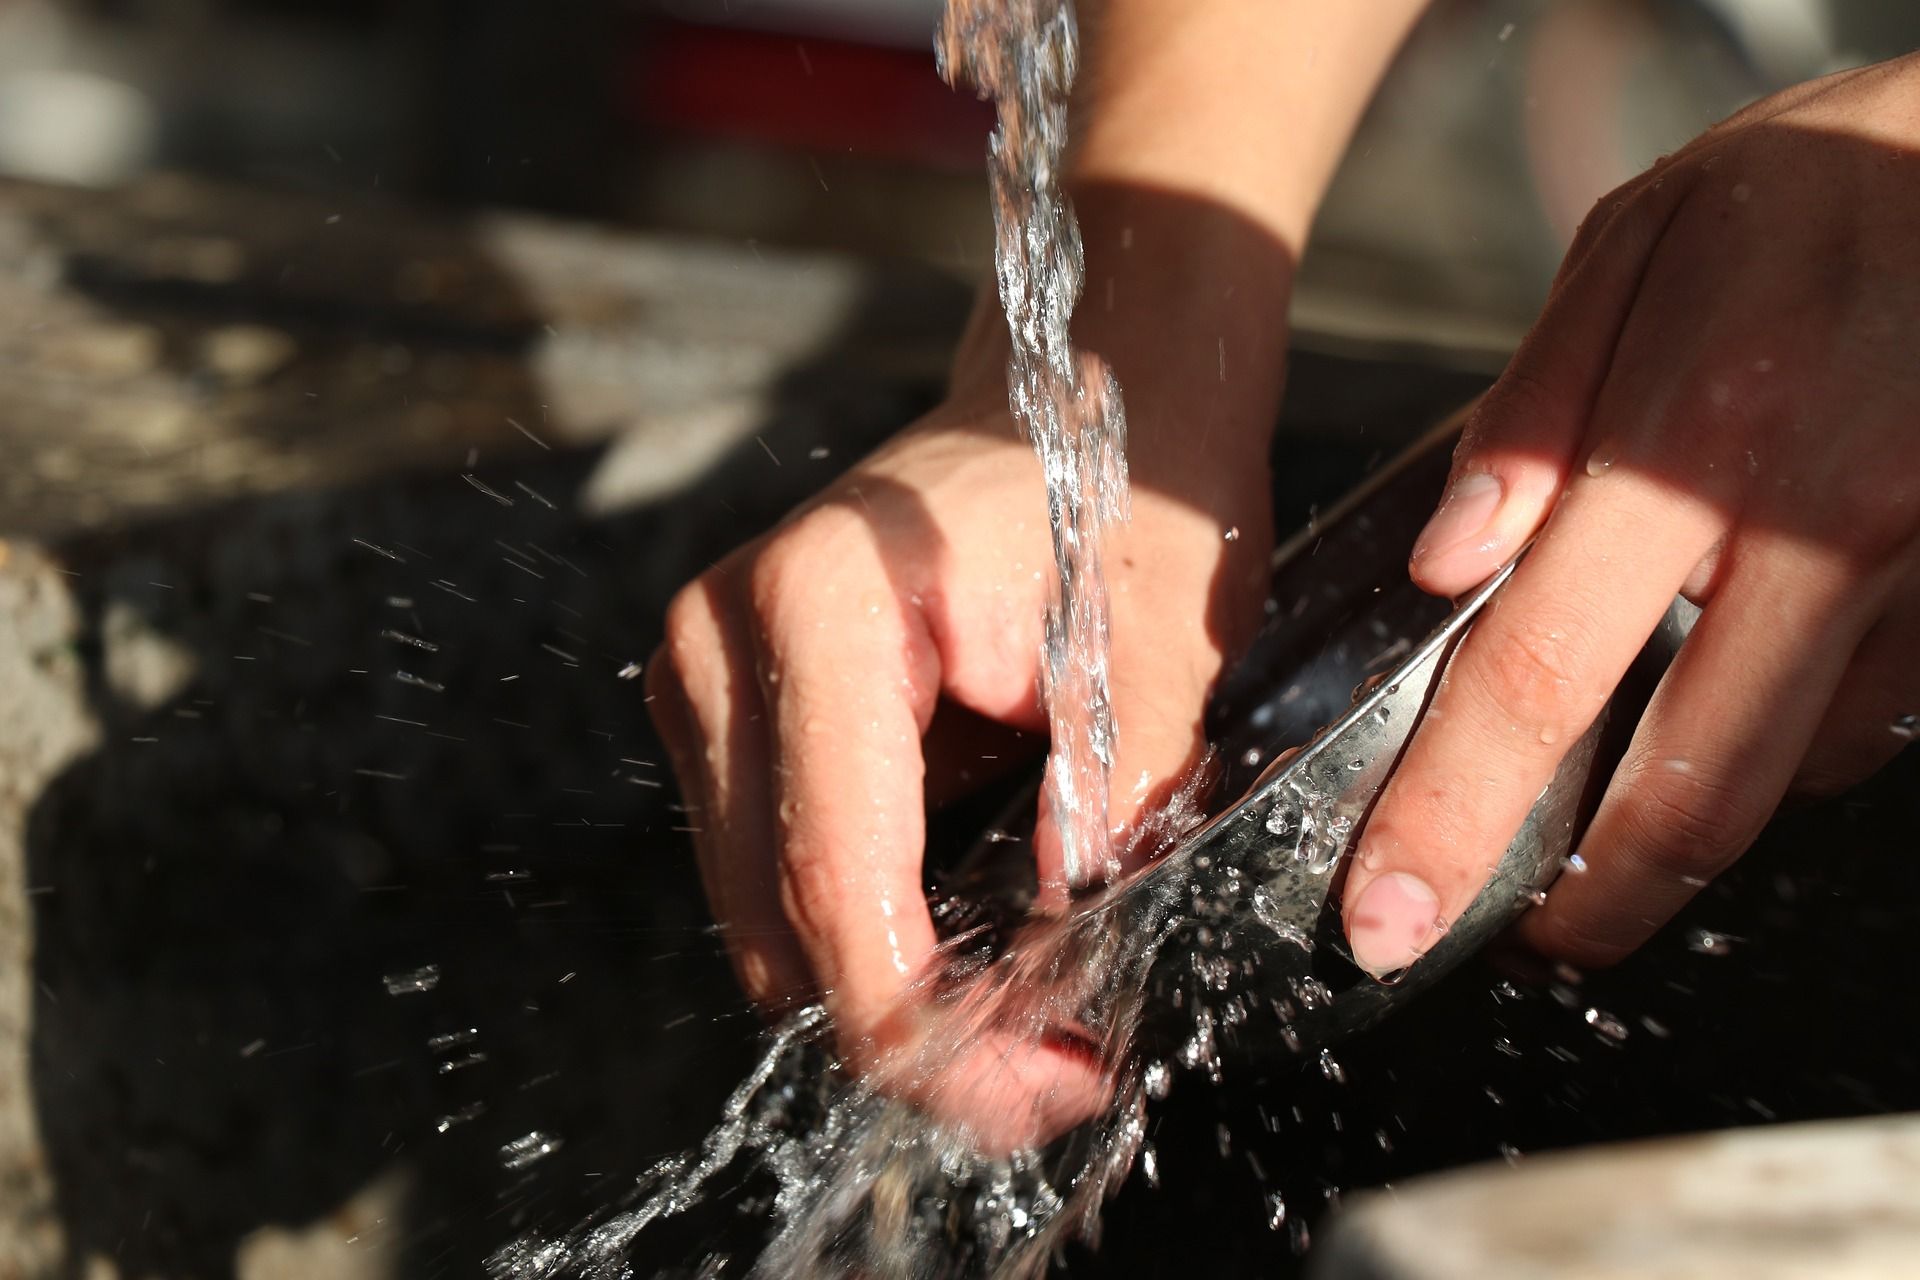 lavage d'une assiette sous le robinet - Image par 国明 李 de https://pixabay.com/fr/photos/d%C3%A9bit-deau-statique-2464417/